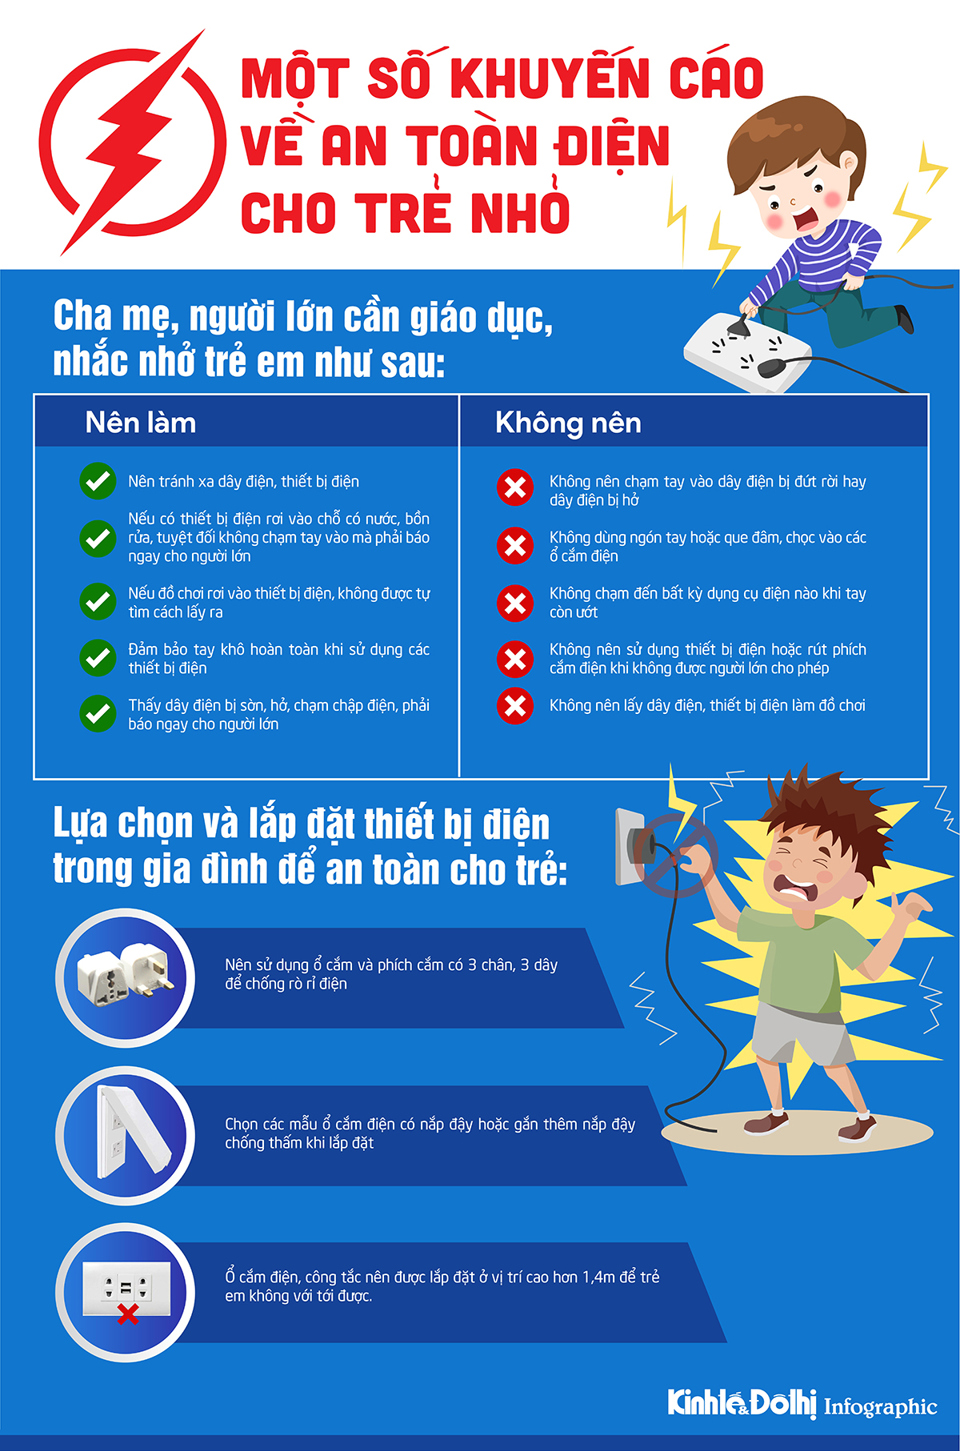 Infographic] Khuyến cáo về an toàn điện cho trẻ nhỏ